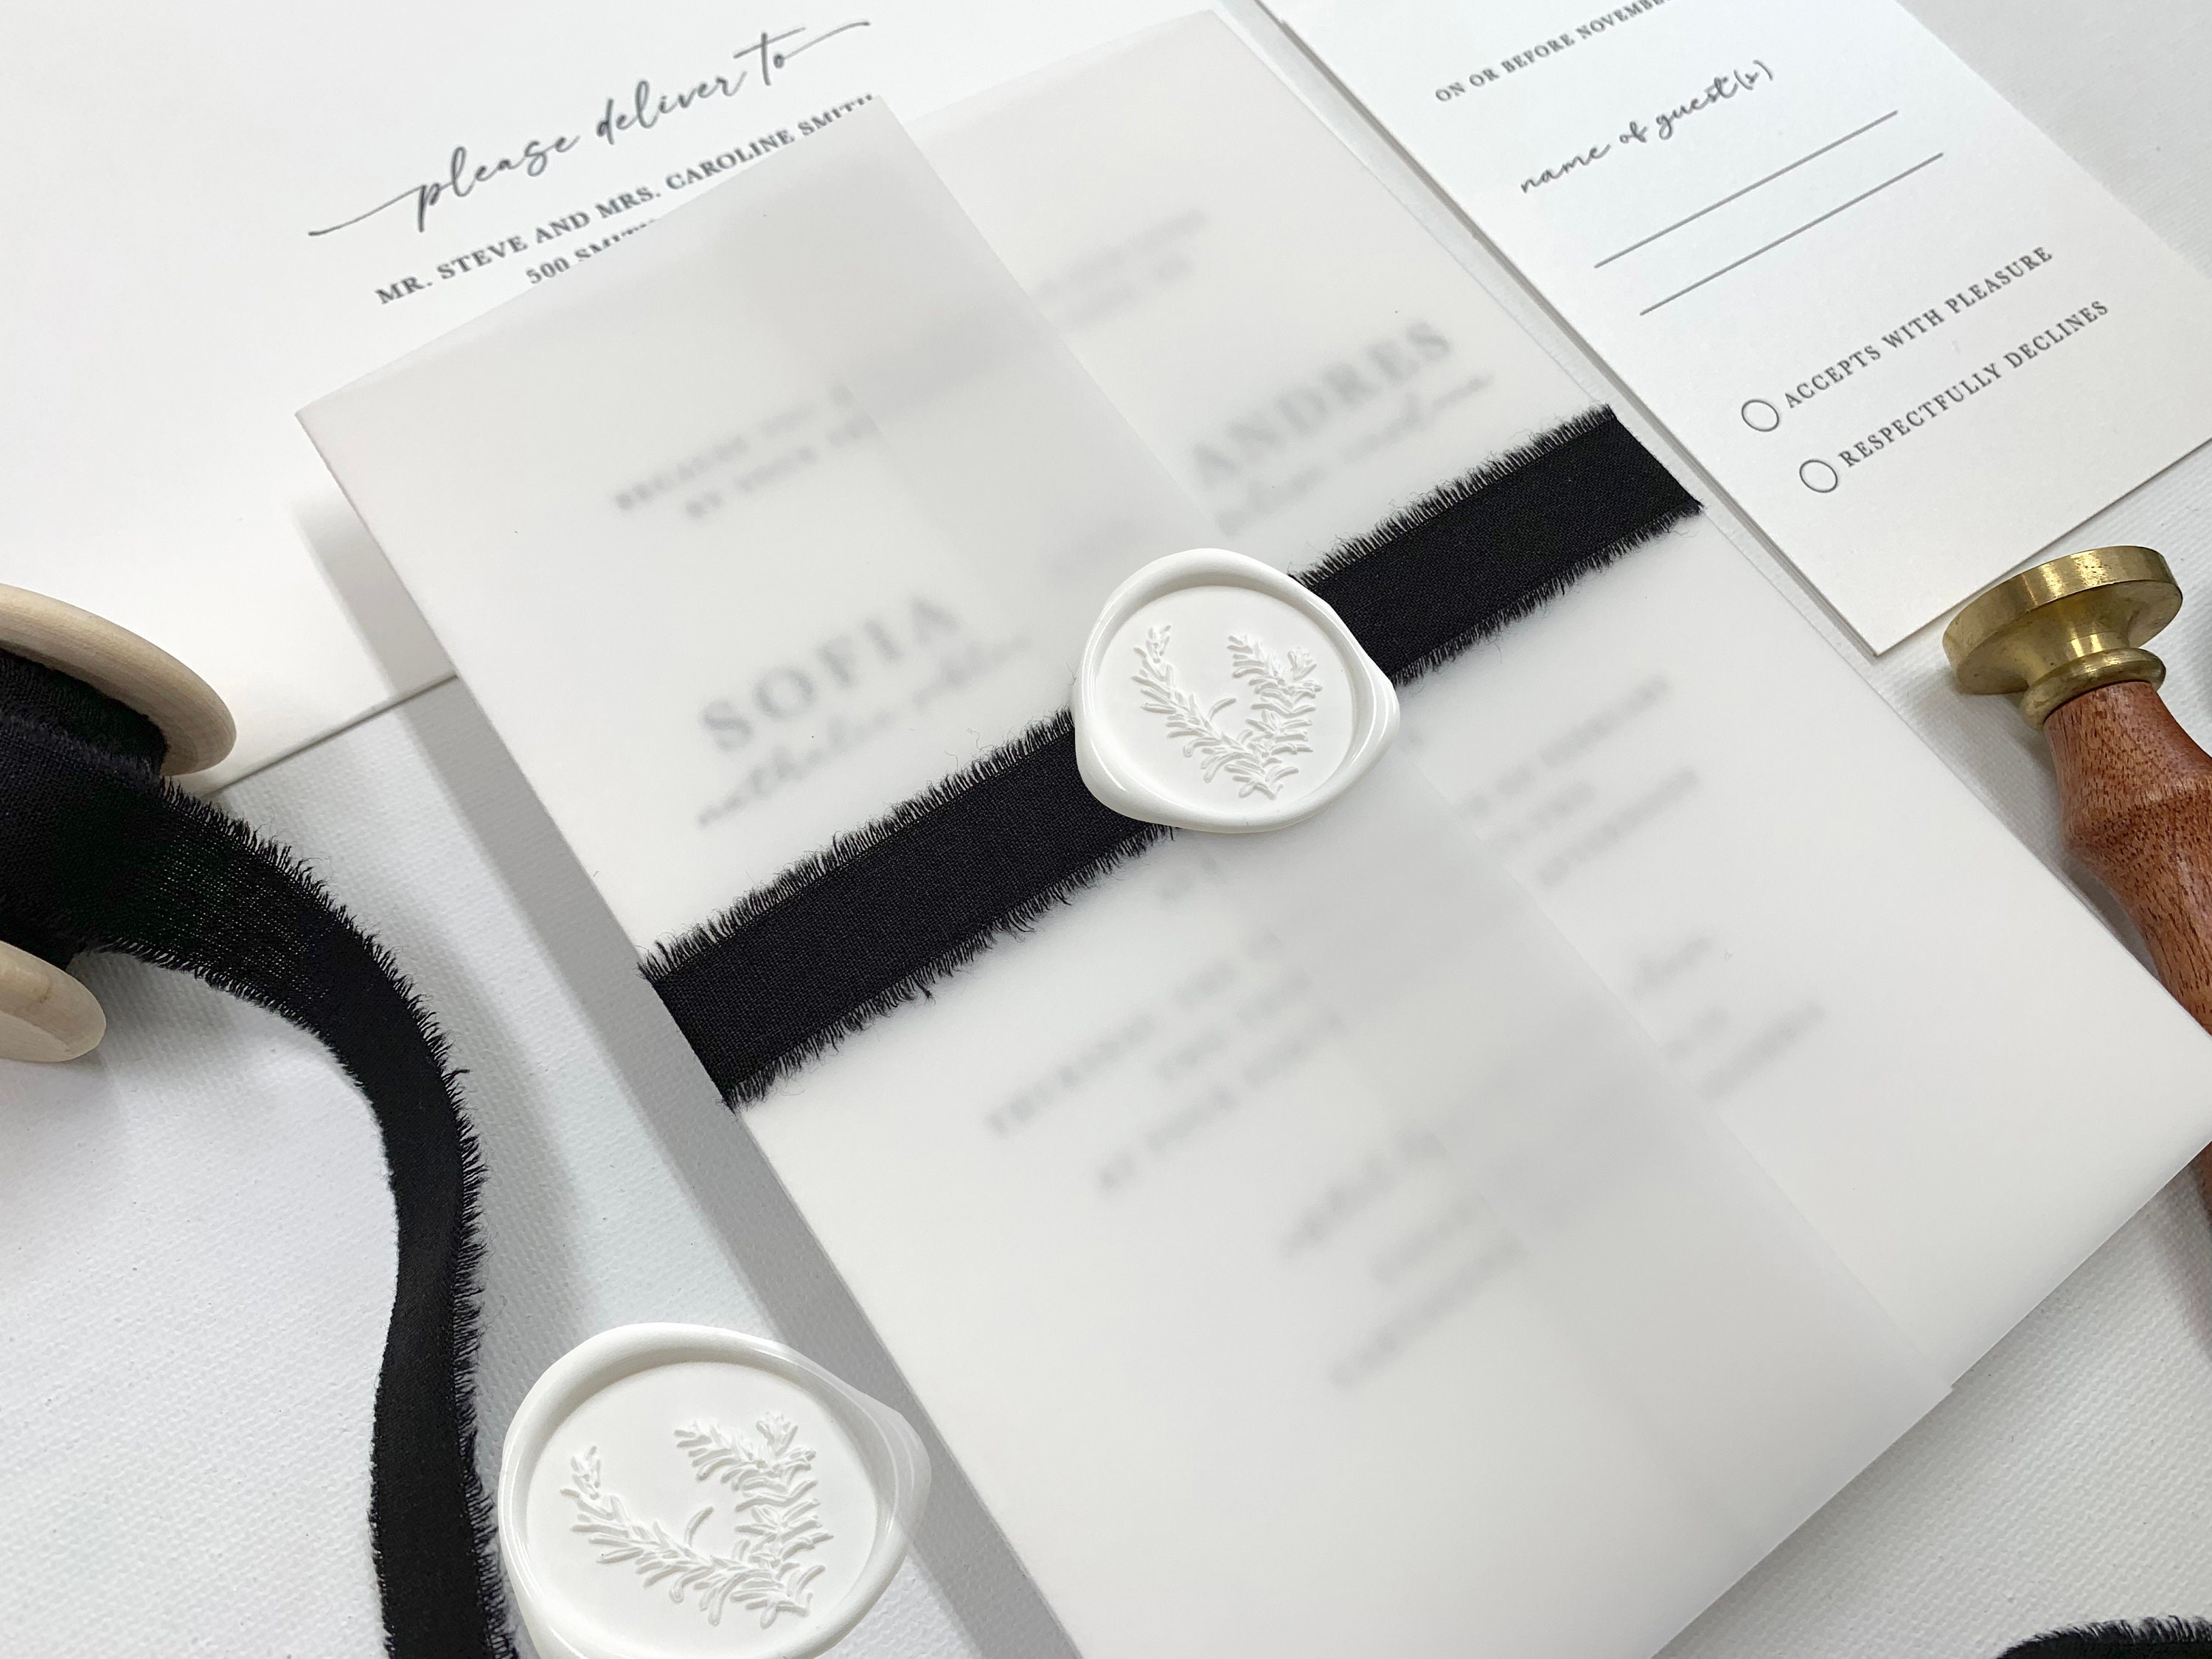 Floral Vellum Jacket, Vellum Invitation Wrap, 5x7 Vellum Wedding  Invitation, Black Floral Vellum Paper for Invitations, Vellum 